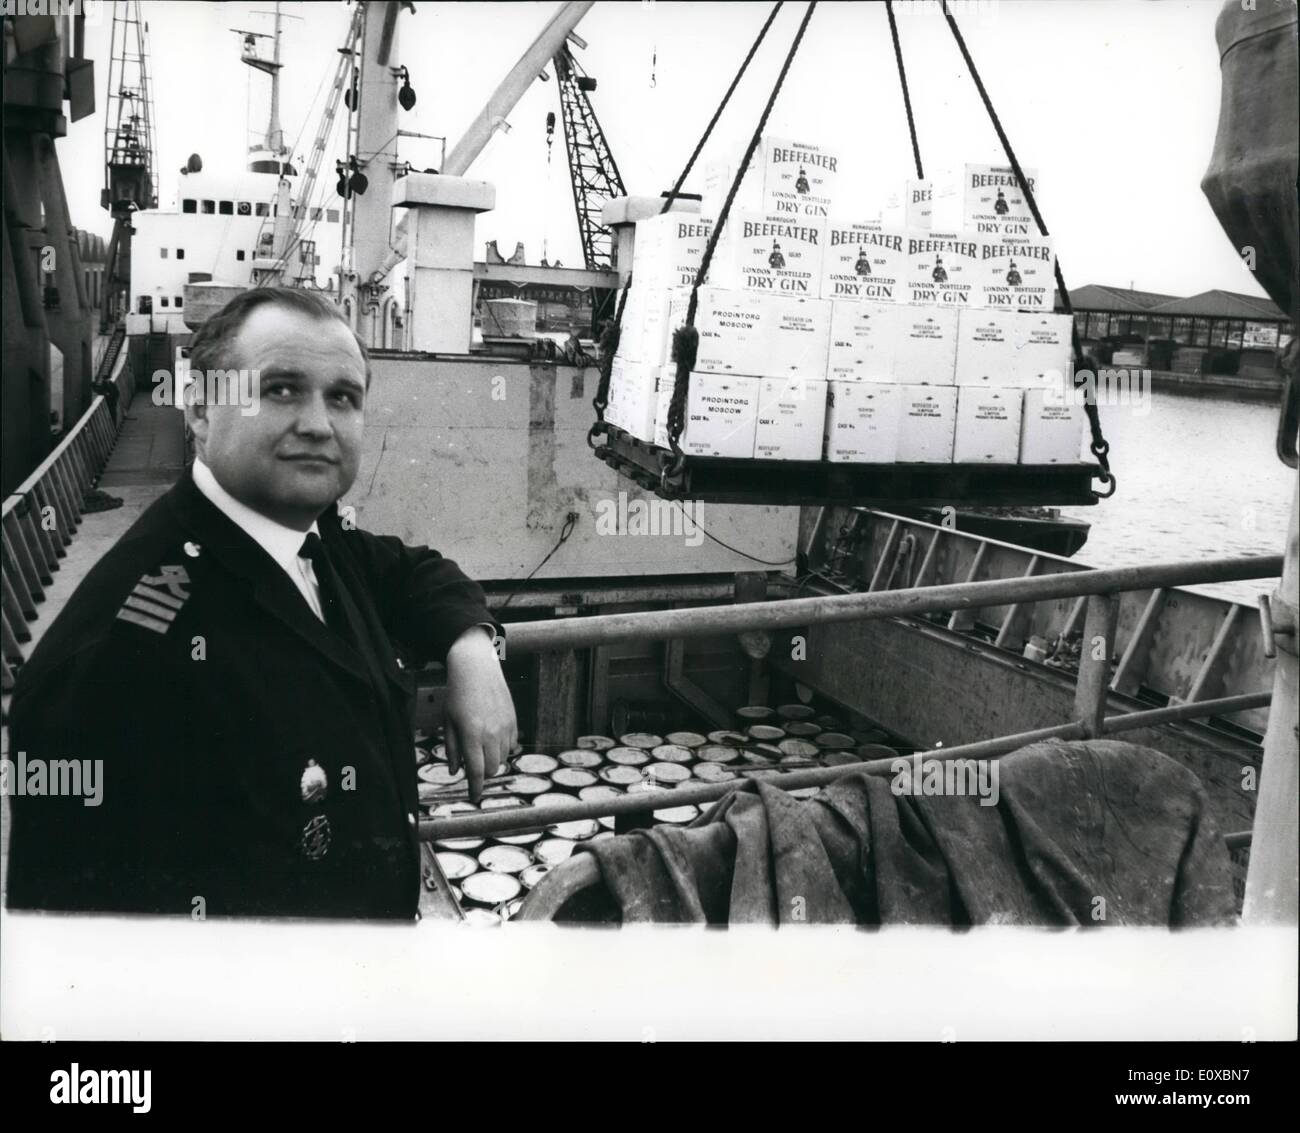 02 février 1966 - Colombie Britannique et Whisky Gin pour la Russie : Ce matin, à l'Enquête sur les quais commerciaux à l'exportation la plus importante de la Gin et Whisky jusqu'à présent a été chargé à bord du cargo soviétique ''Irtysrles''. L'envoi, à destination de Moscou, par l'intermédiaire de Leningrad se compose de 50 000 b0ttles de whisky et 20 000 bouteilles de Gin. La photo montre le capitaine Koviskkov, du ''cargo russe Irtyshles'' vu la première charge dans la cale du navire à la Surrey Docks commerciaux. Banque D'Images